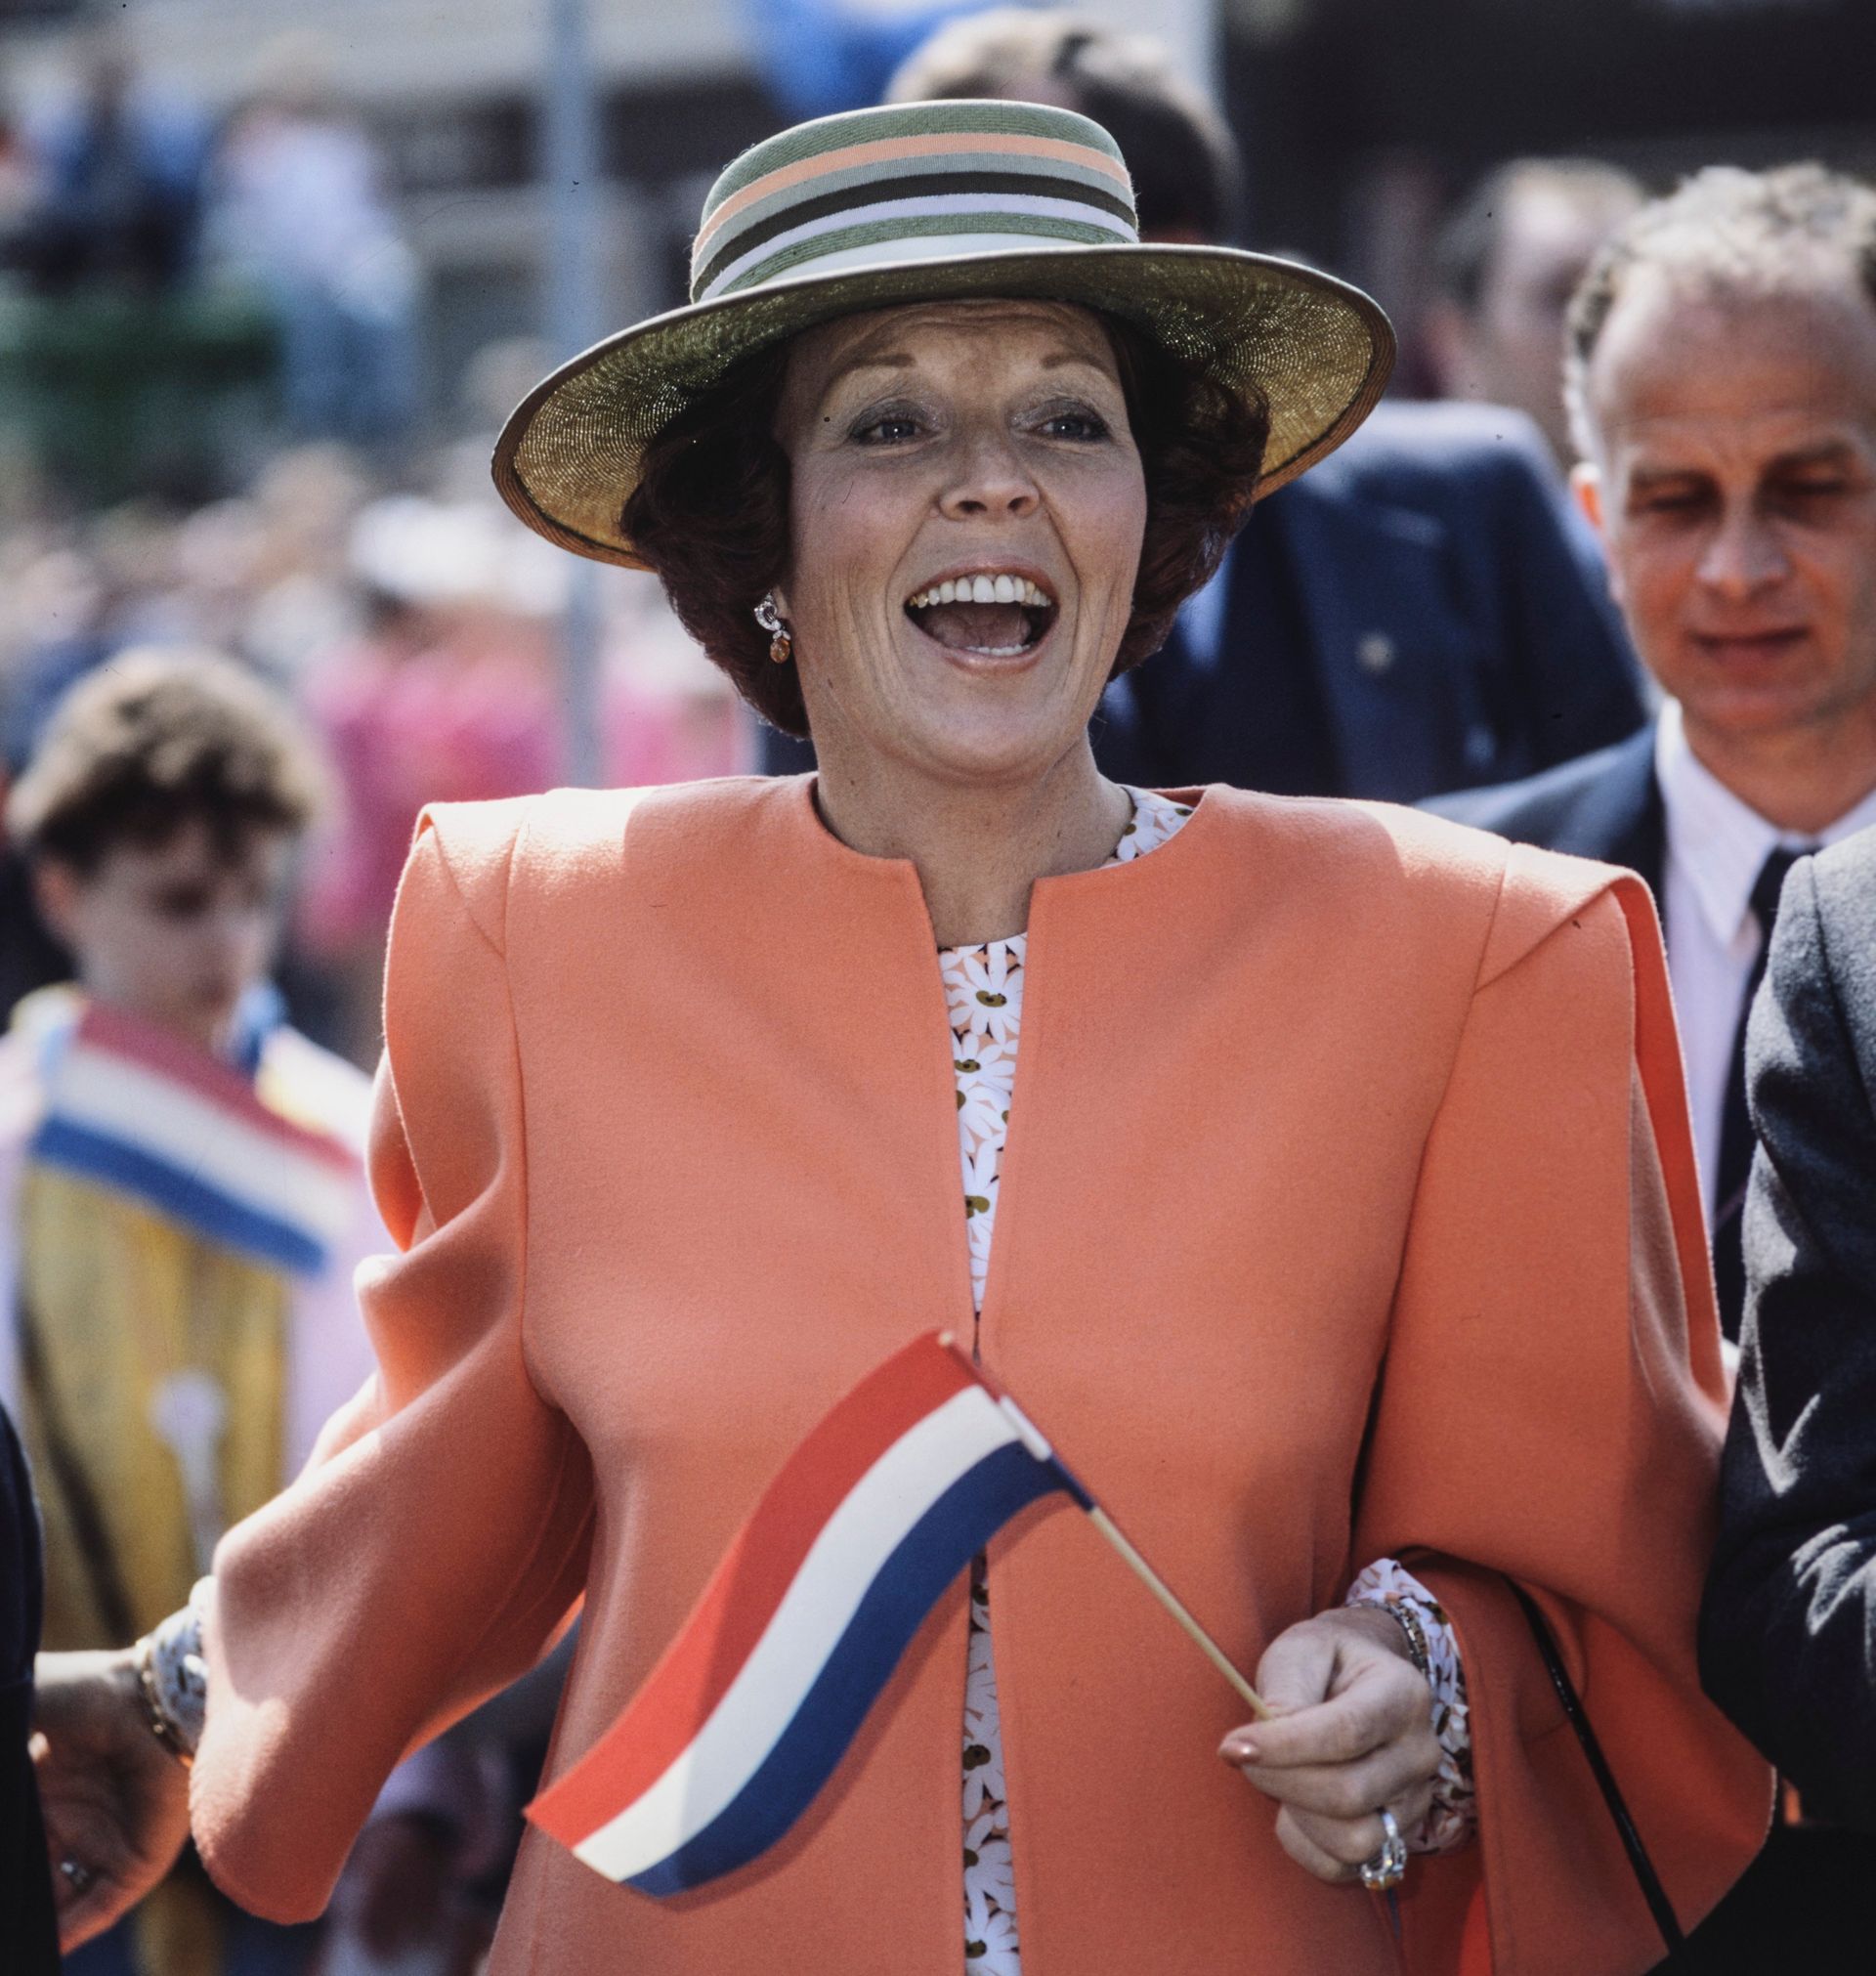 Koninginnedag 1986 in het Noord-Brabantse Deurne en Limburgse Meijel. De koningin is in een wel heel